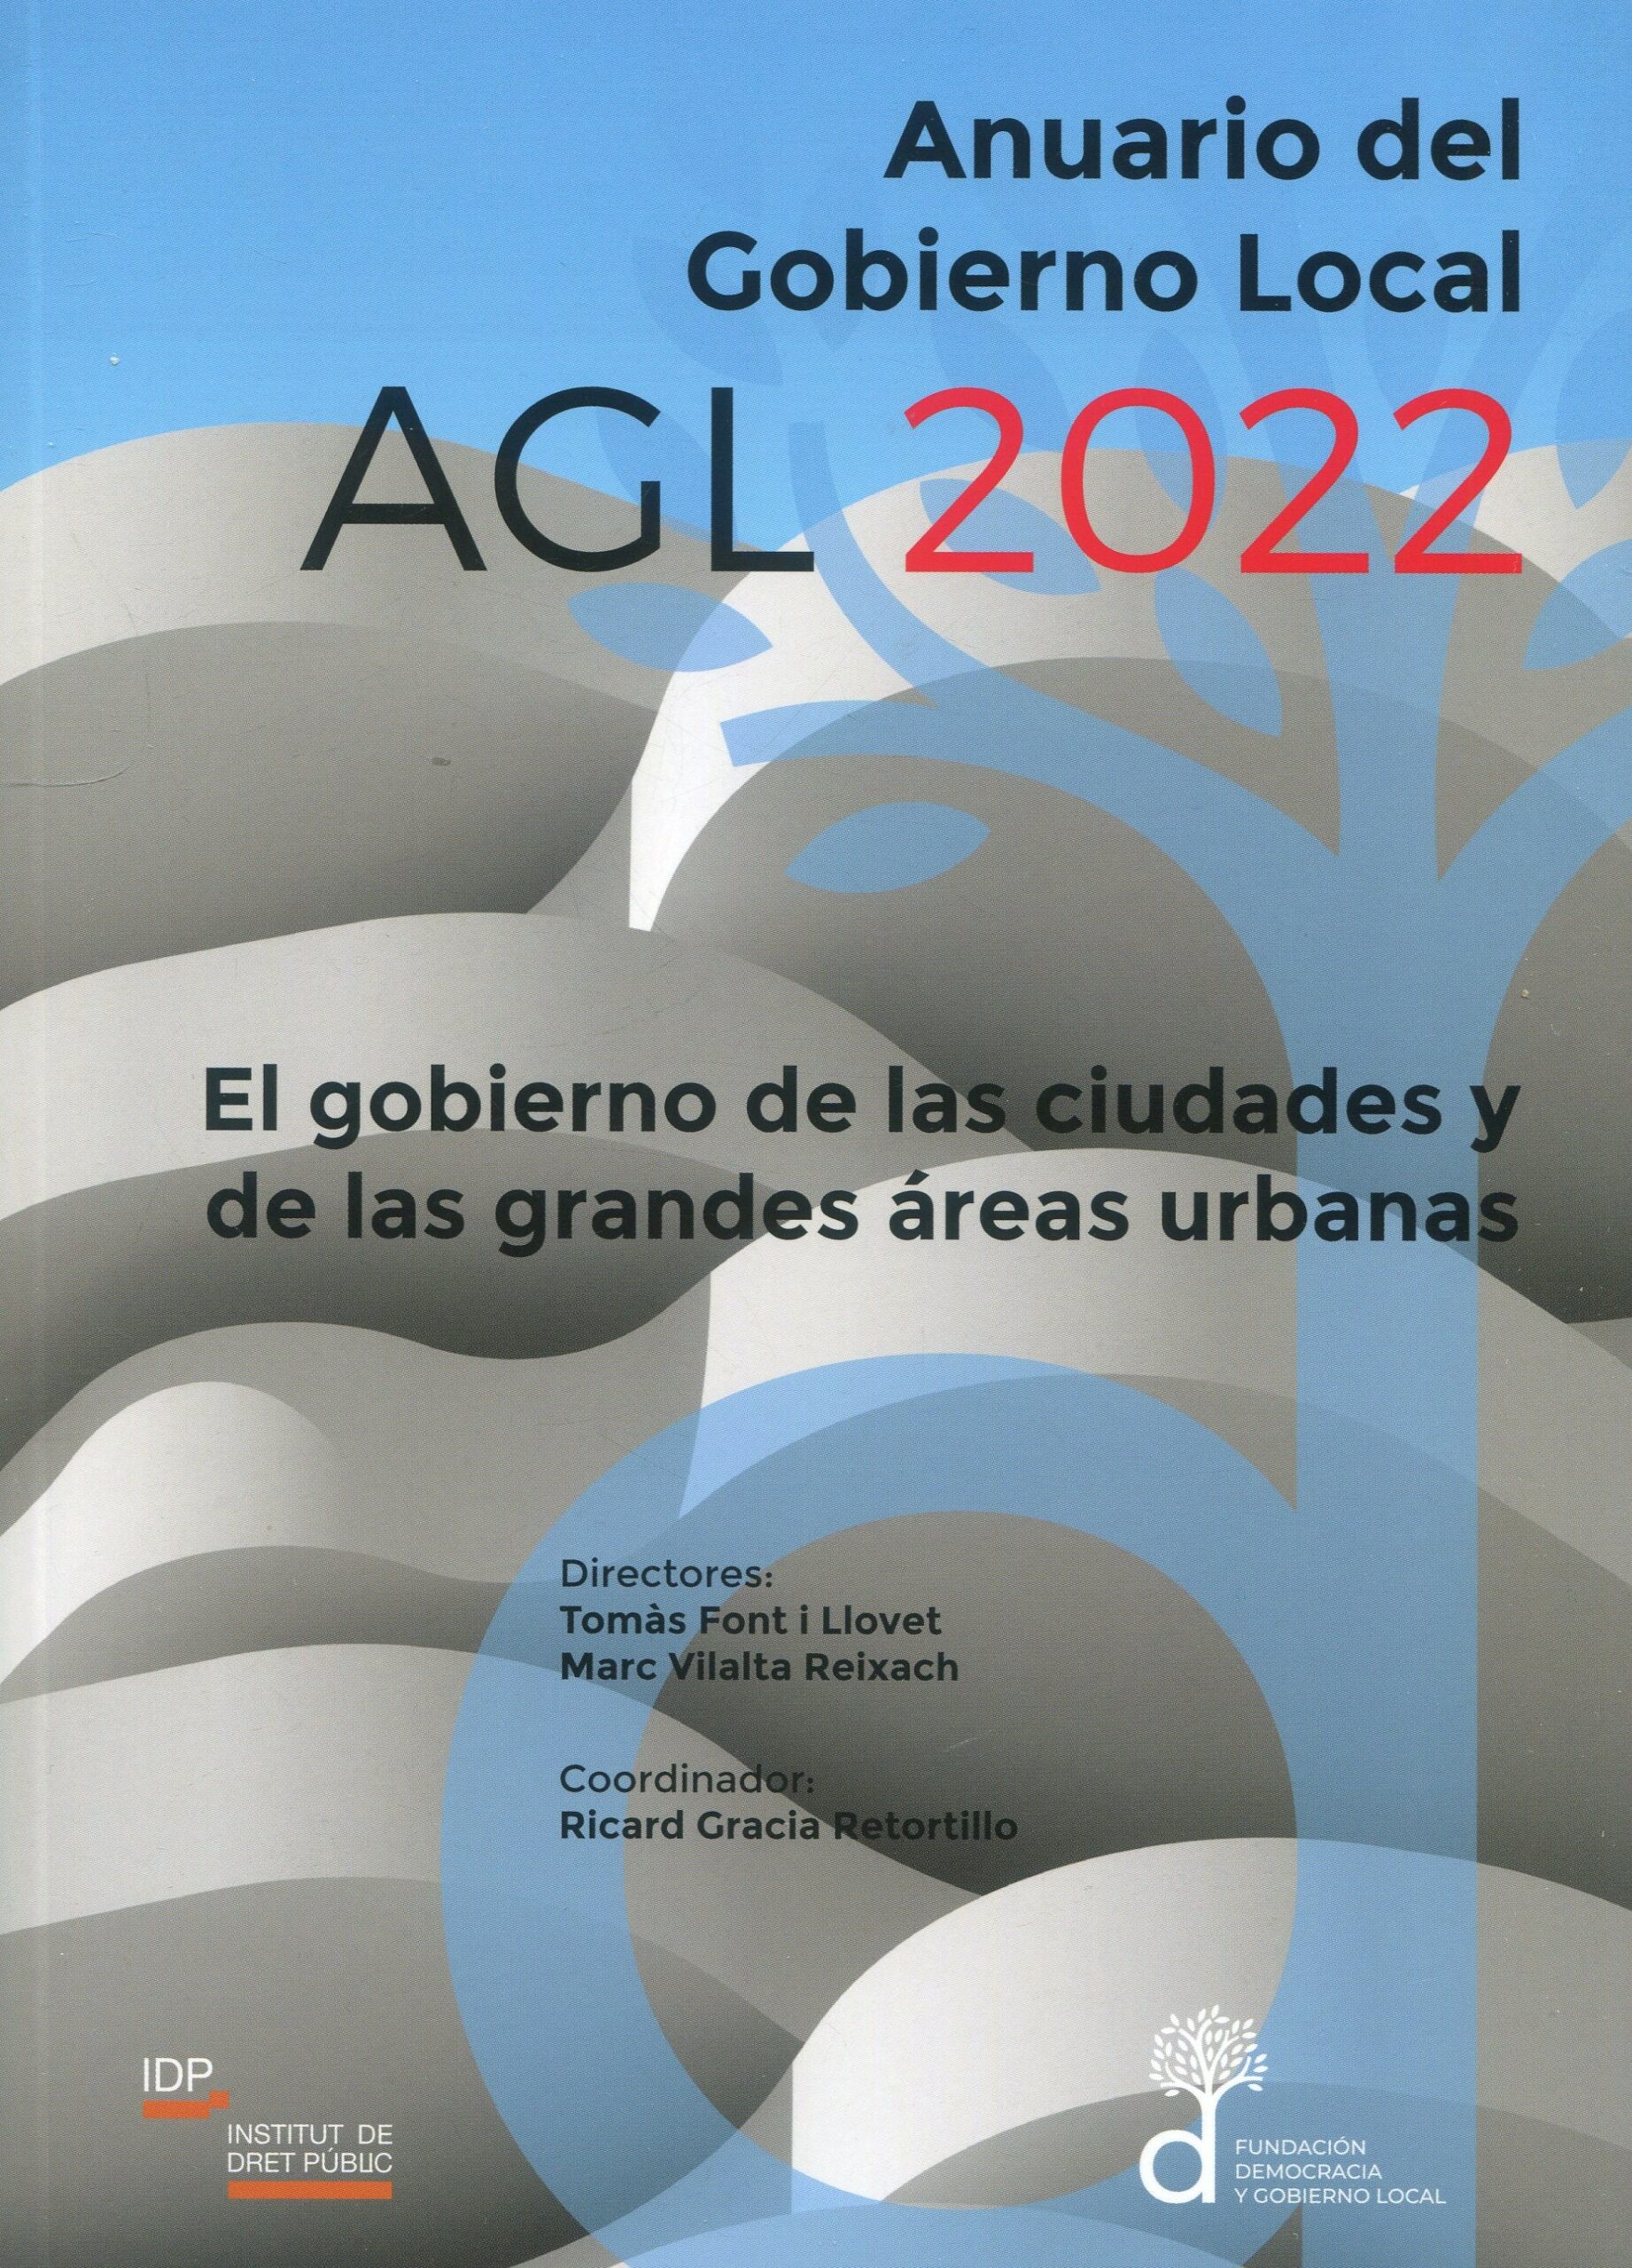 Anuario del Gobierno Local AGL 2022